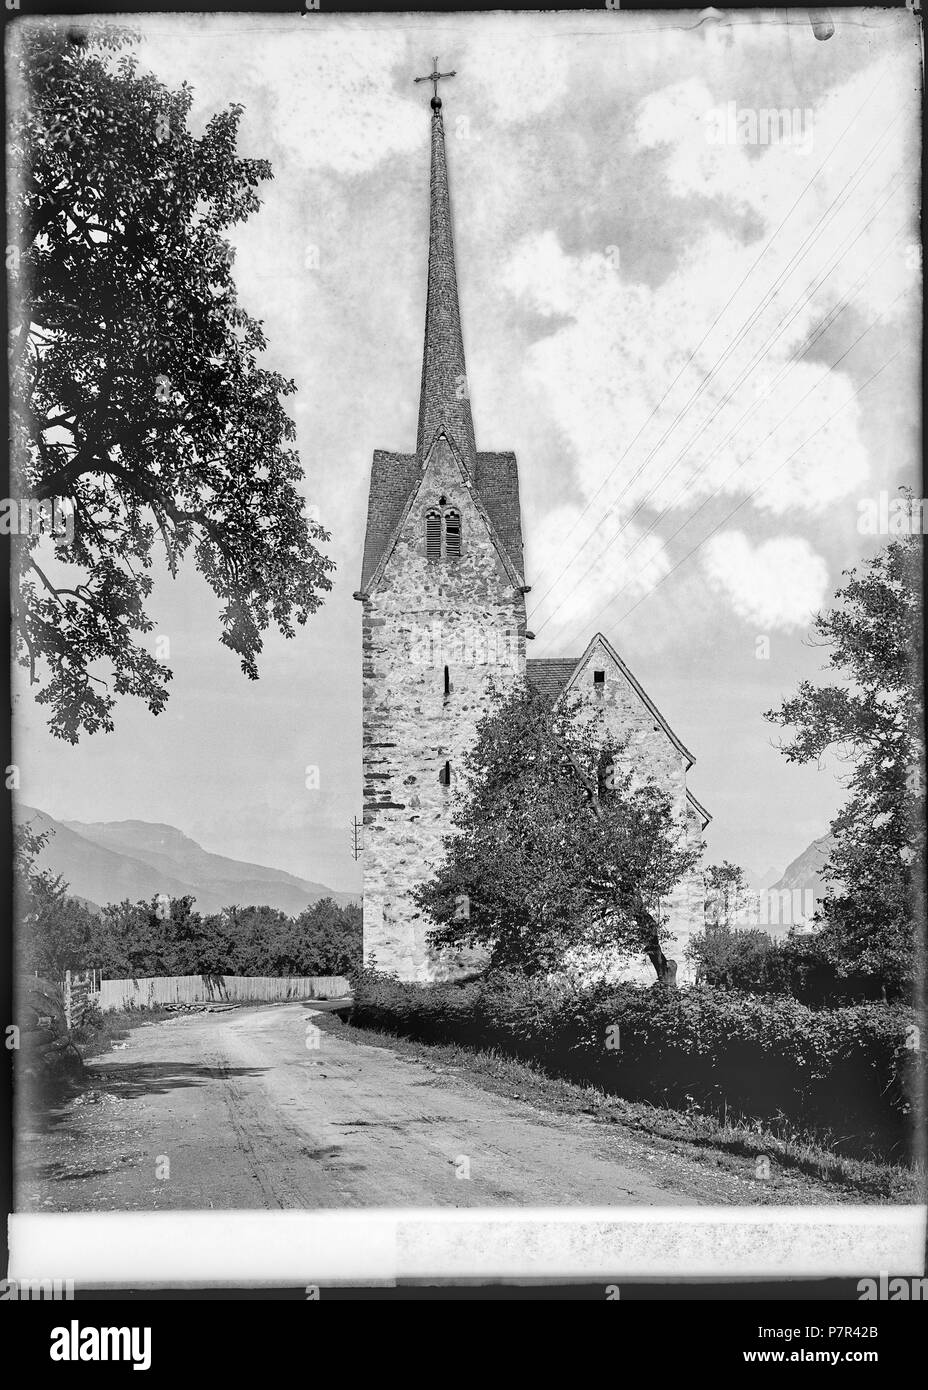 66 CH-NB - Bad Ragaz, Kirche, vue partielle extérieure - Collection Max van Berchem - EAD-6998 Stock Photo